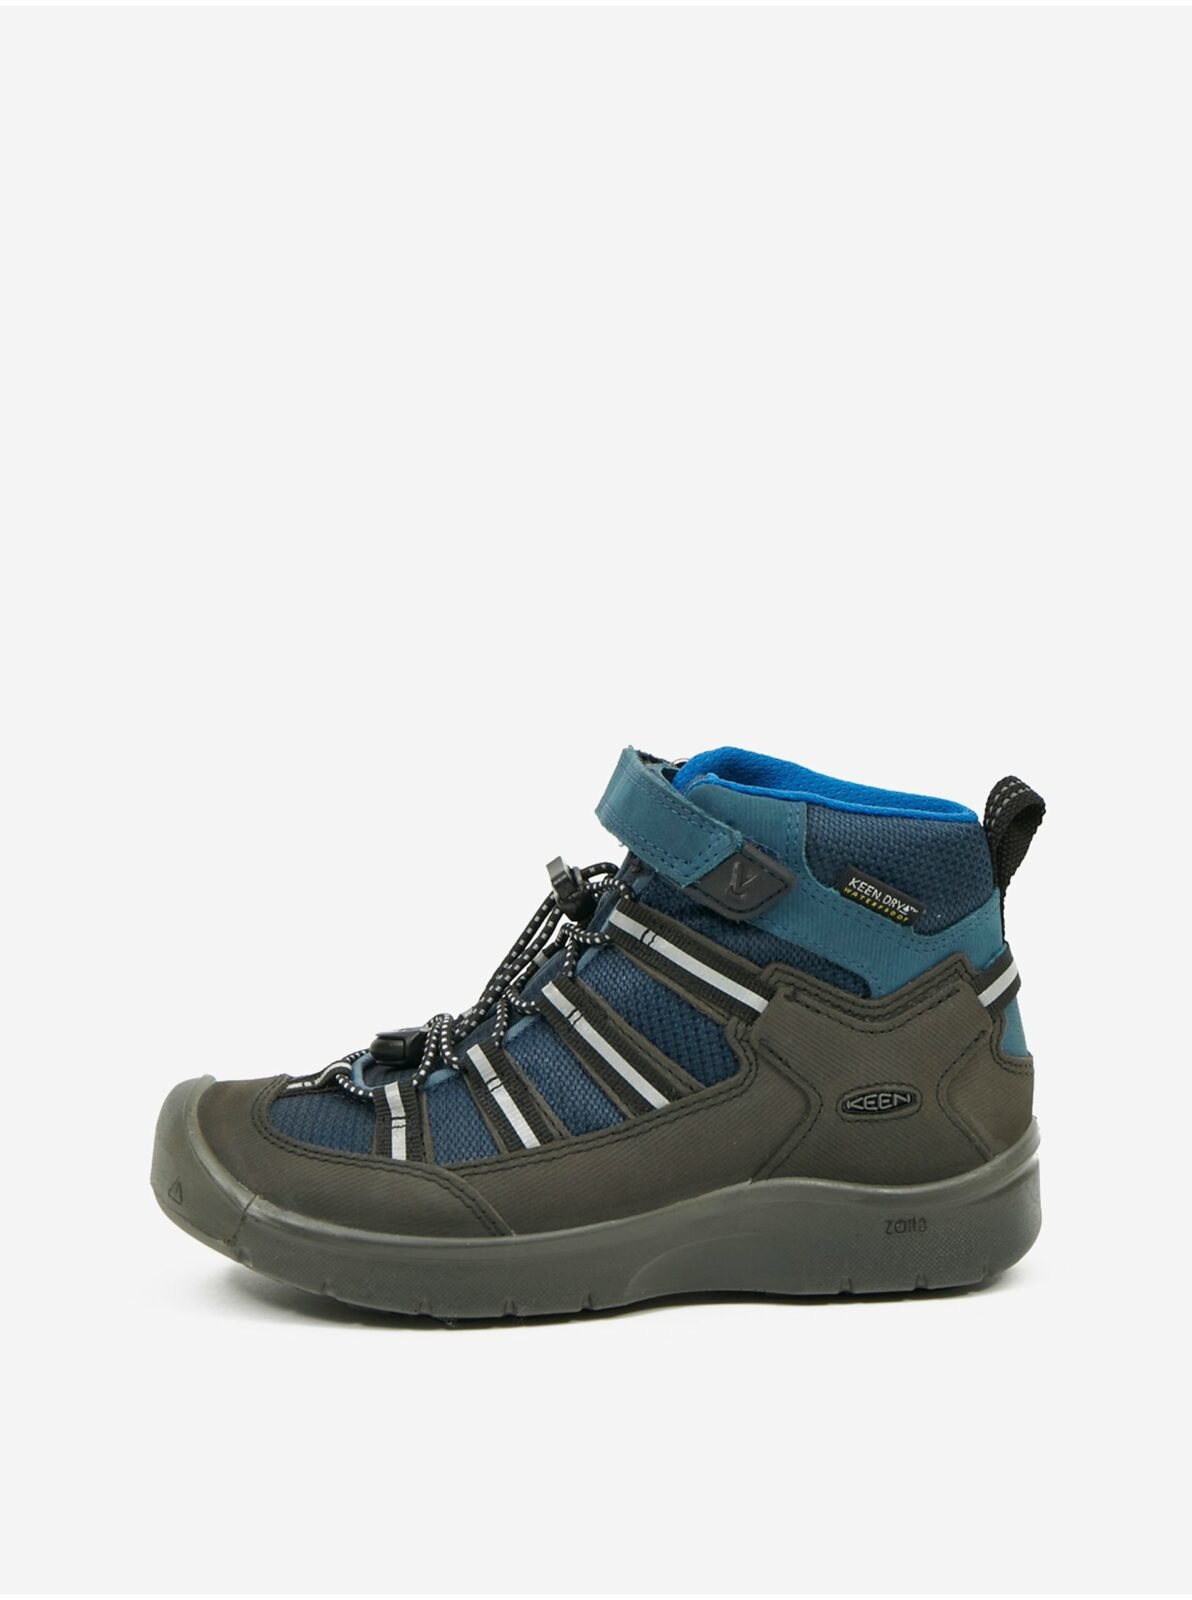 Modro-černé dětské nepromokavé boty s koženými detaily